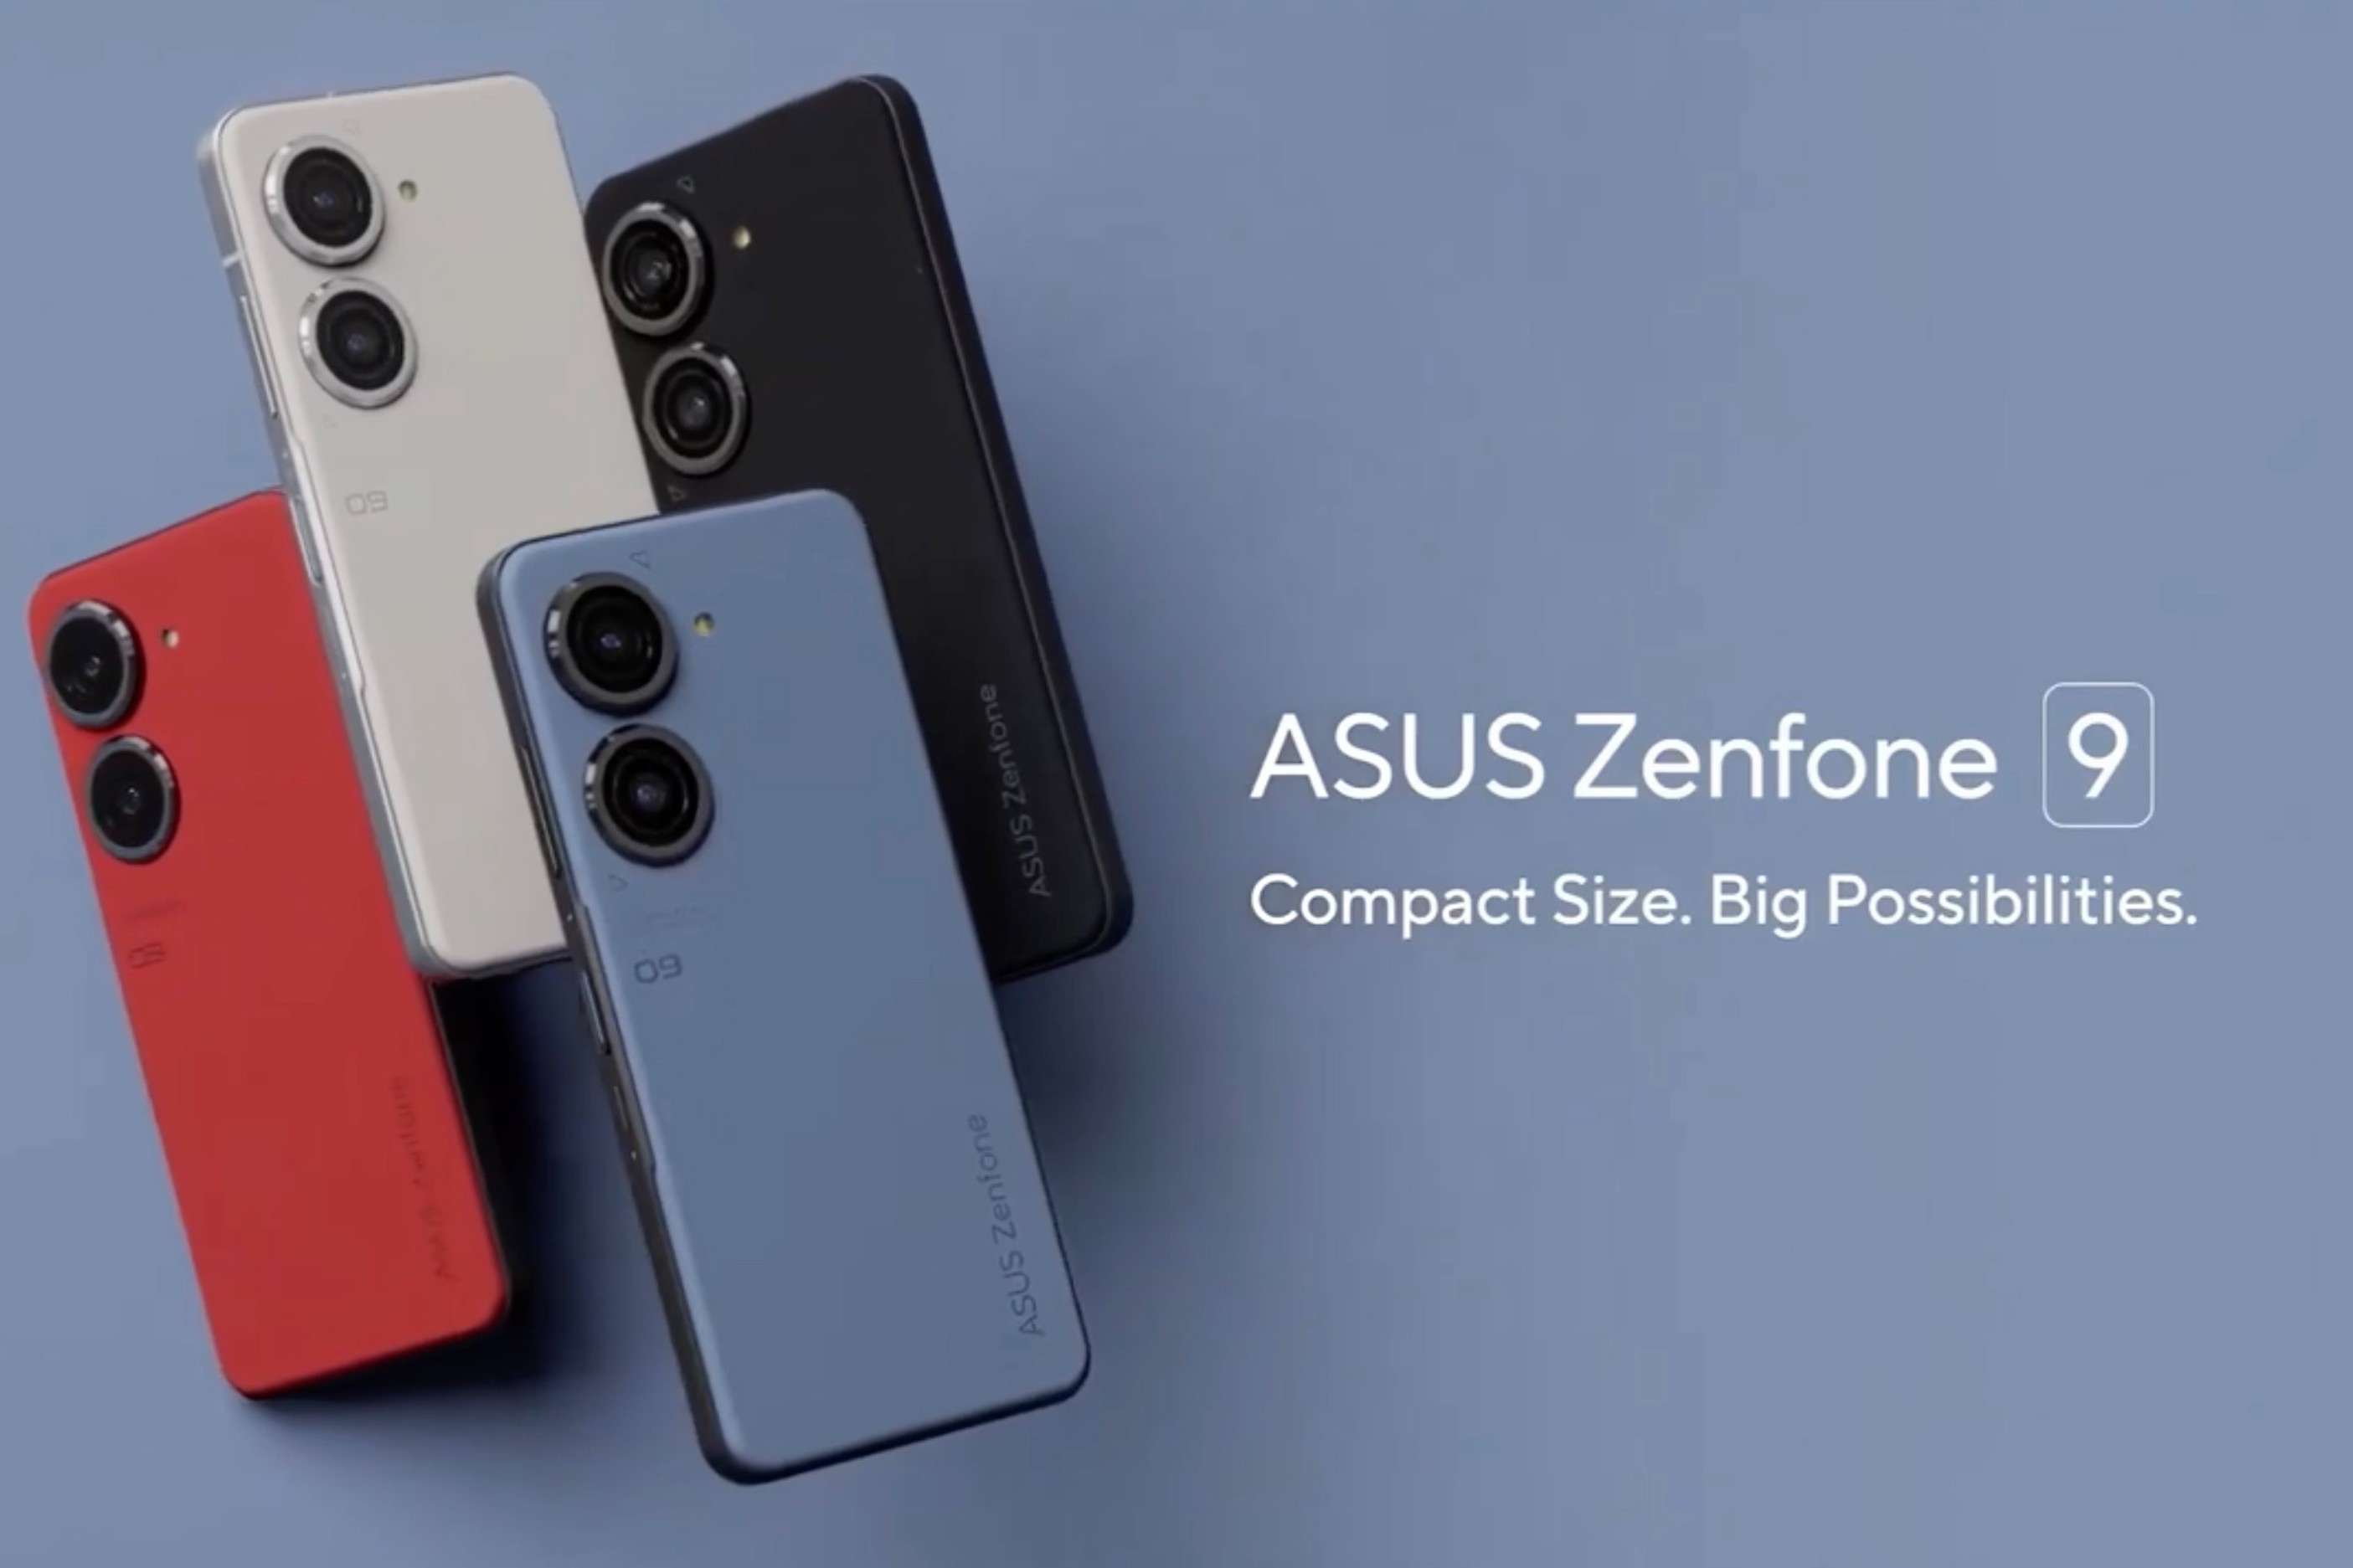 Asus Zenfone 10 vs Zenfone 9: Is newer always better?